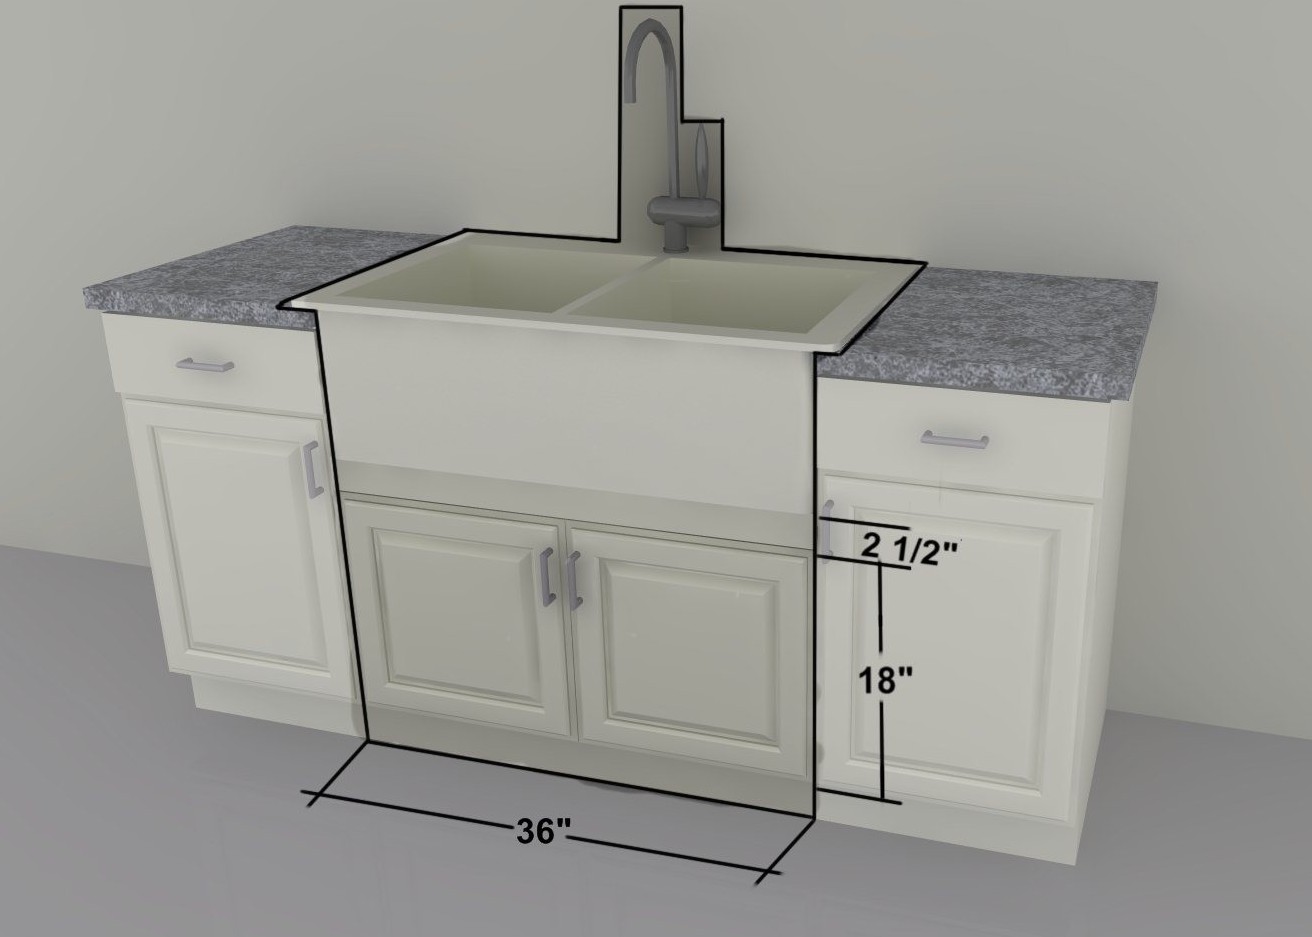 20 inch kitchen sink cabinet